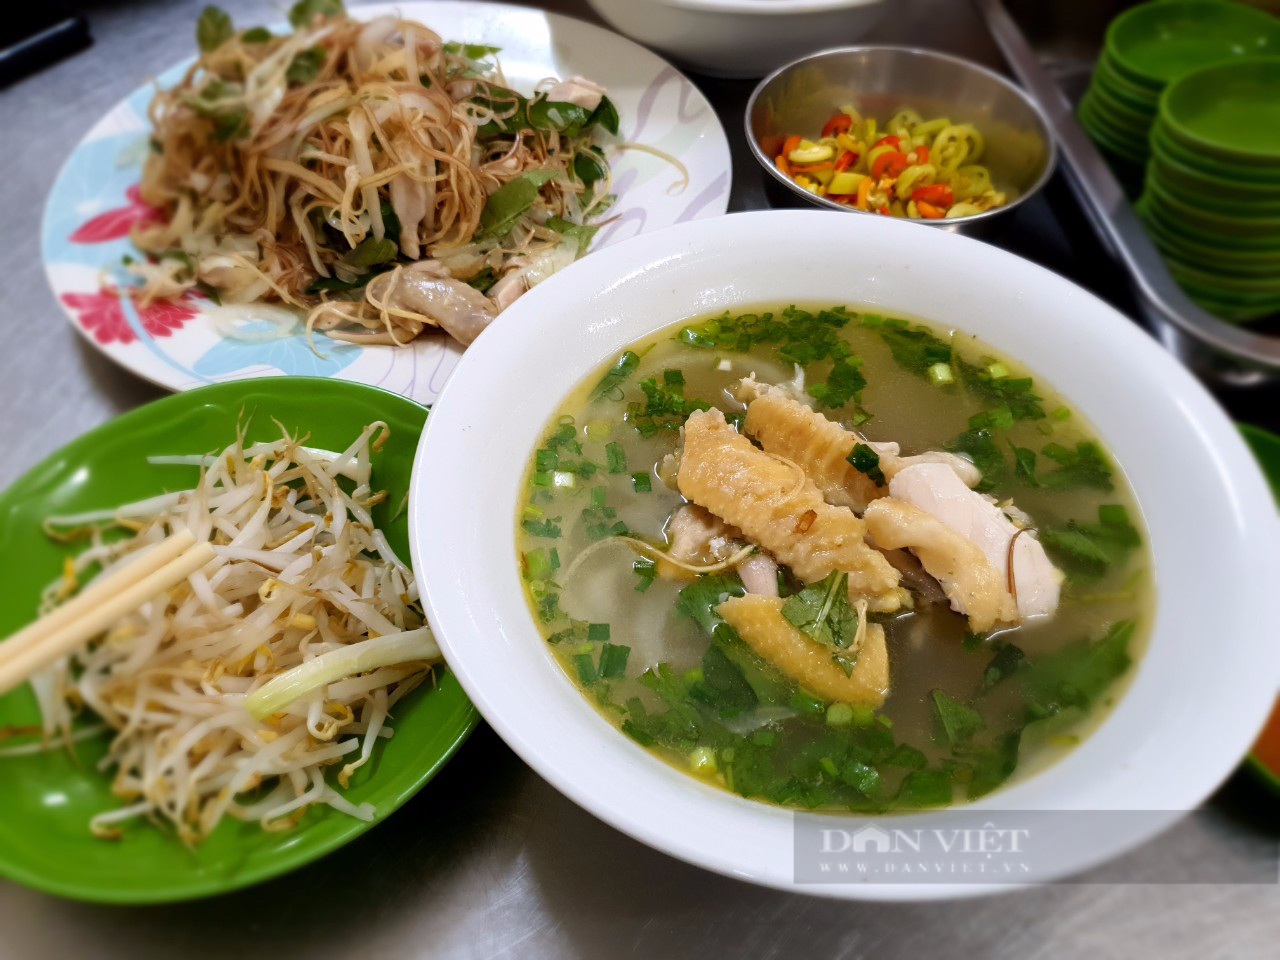 Quán miến gà nổi tiếng ở Sài Gòn, kín bàn từ sáng đến tận khuya - Ảnh 1.